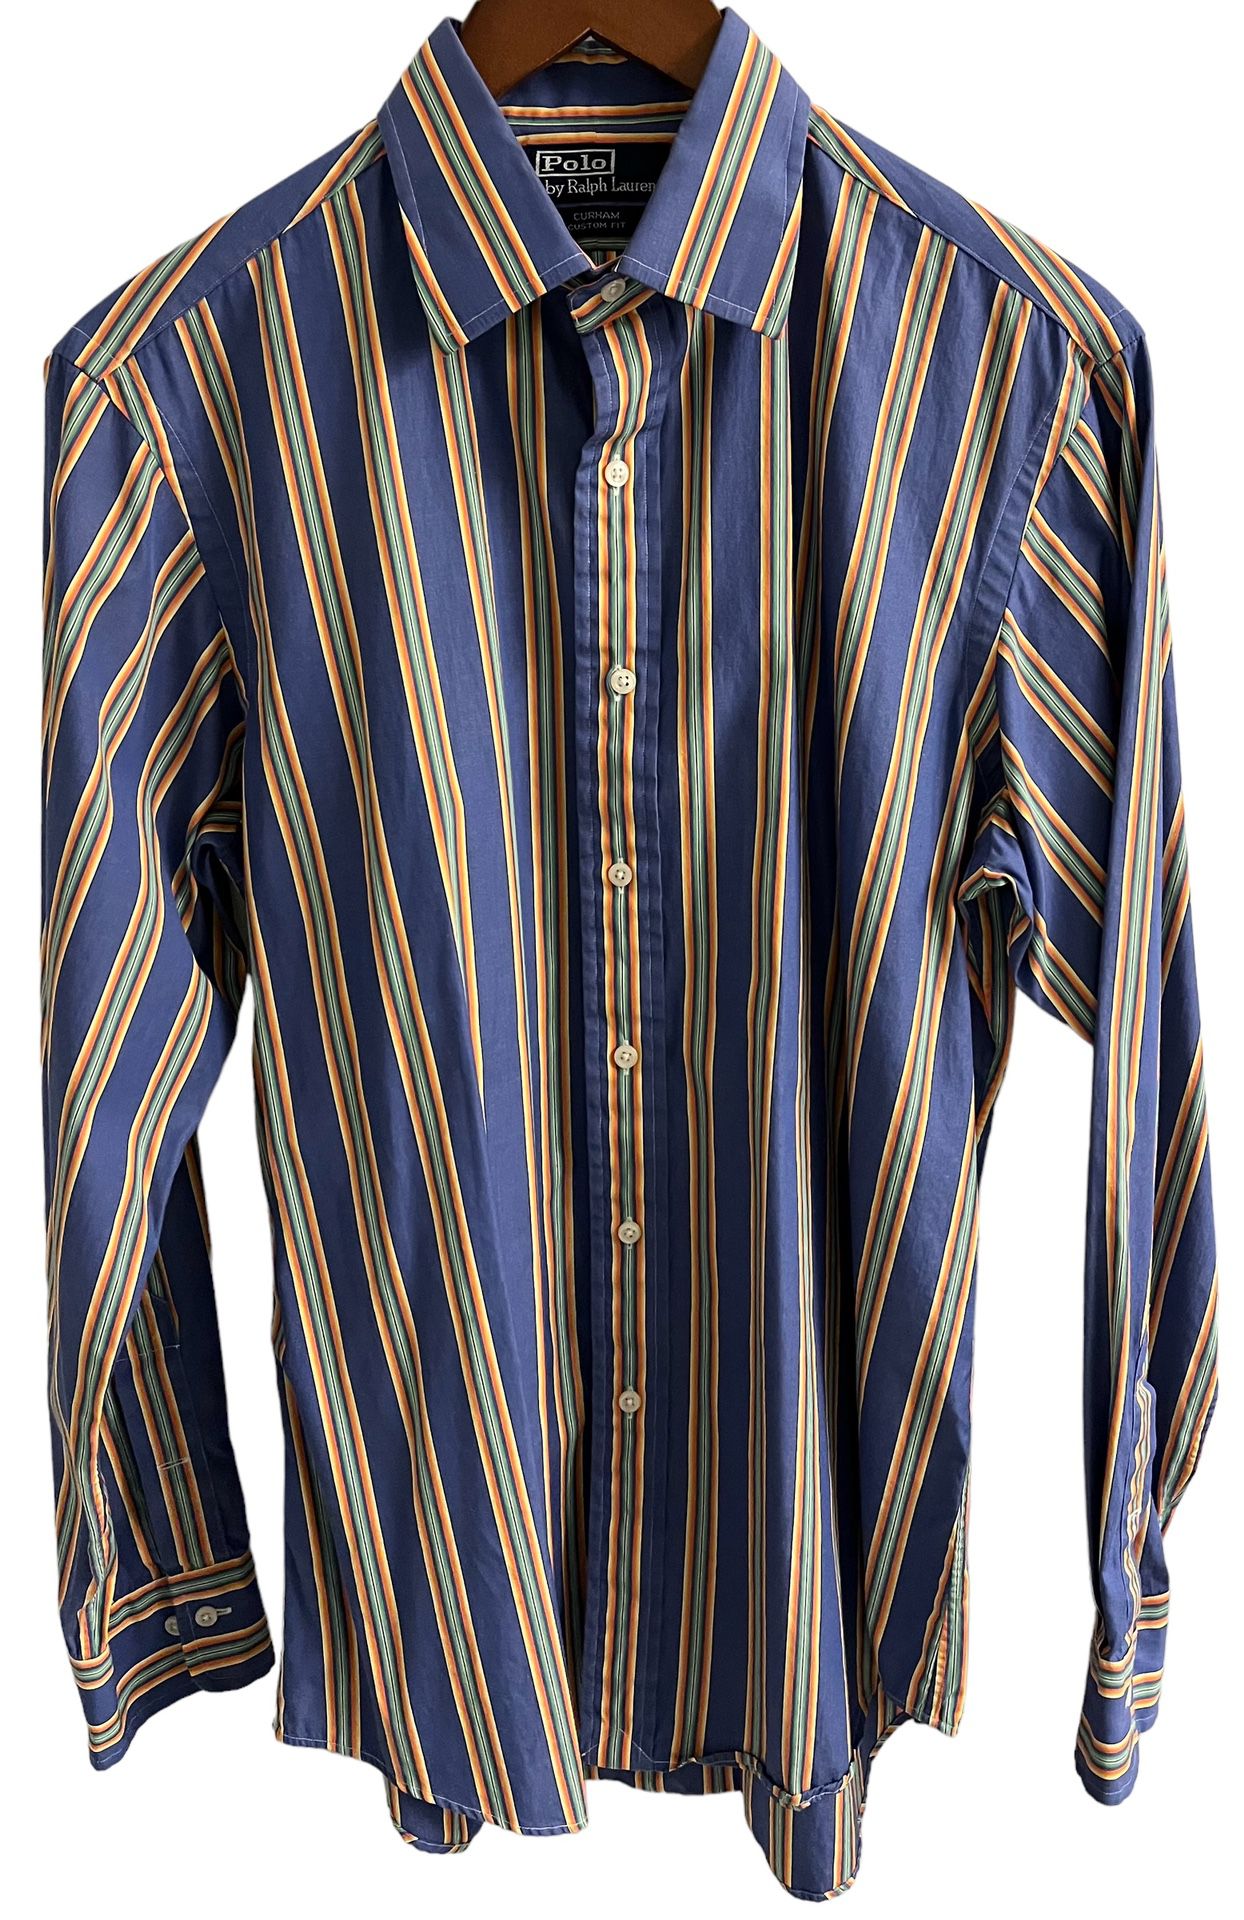 Polo Ralph Lauren Shirt Mens Size16 34/35 Striped Button Up Long Sleeve